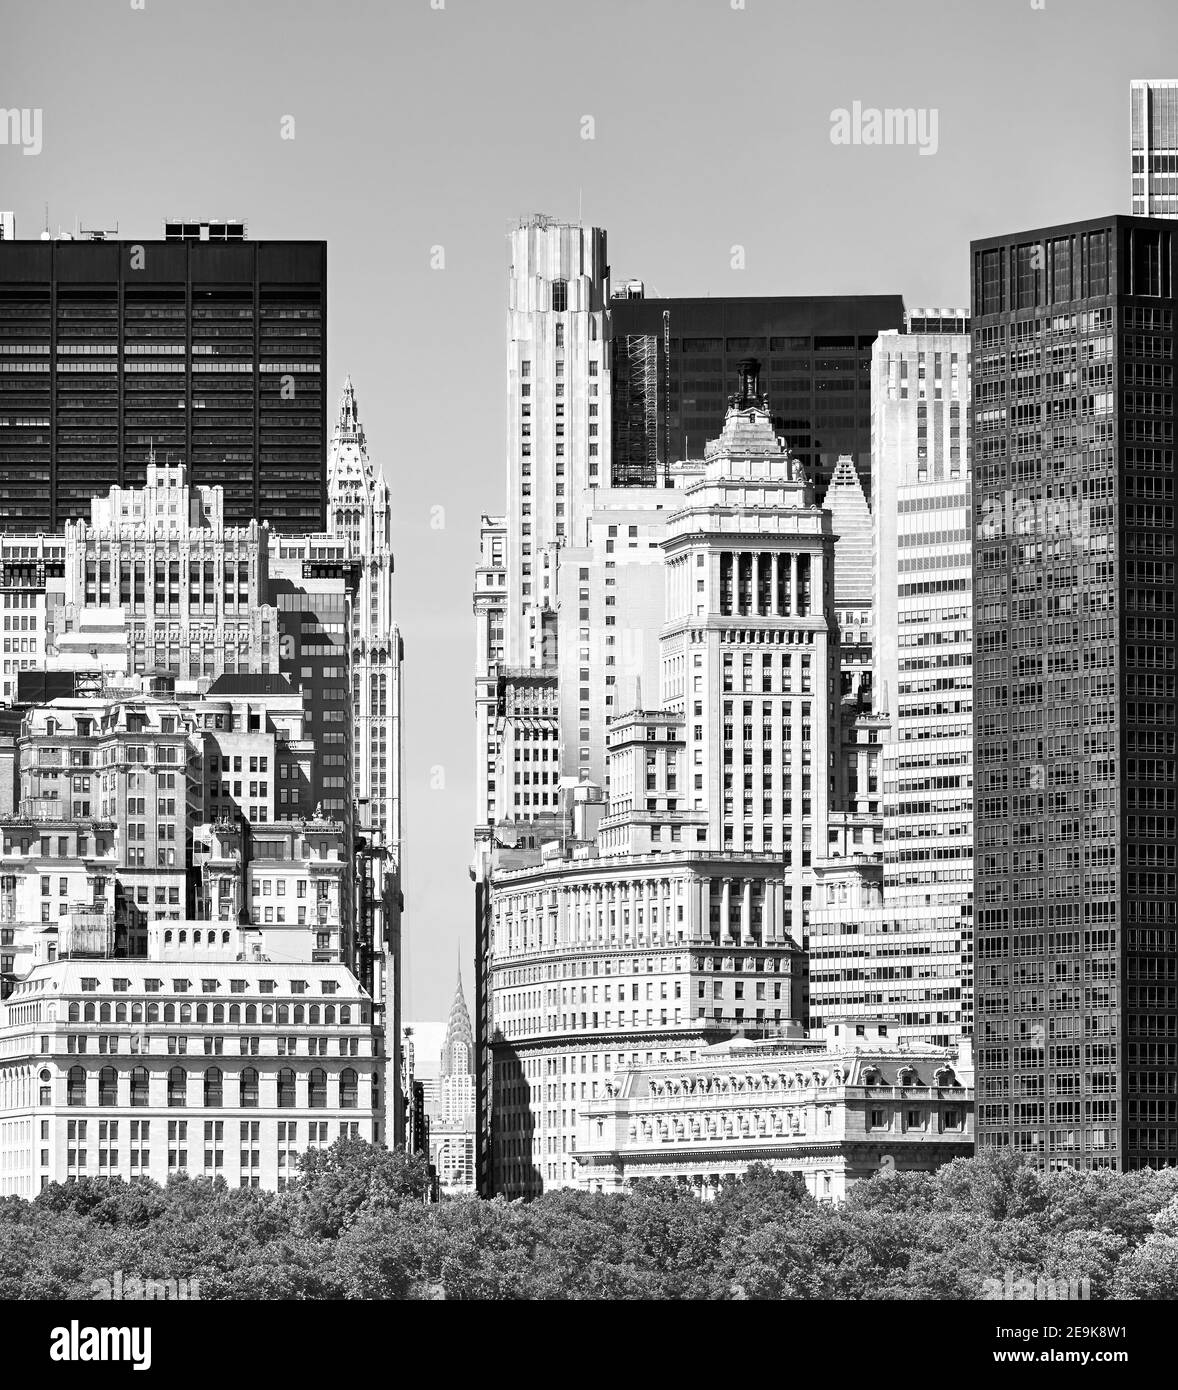 Immagine in bianco e nero della diversa architettura di Manhattan, New York City, USA. Foto Stock